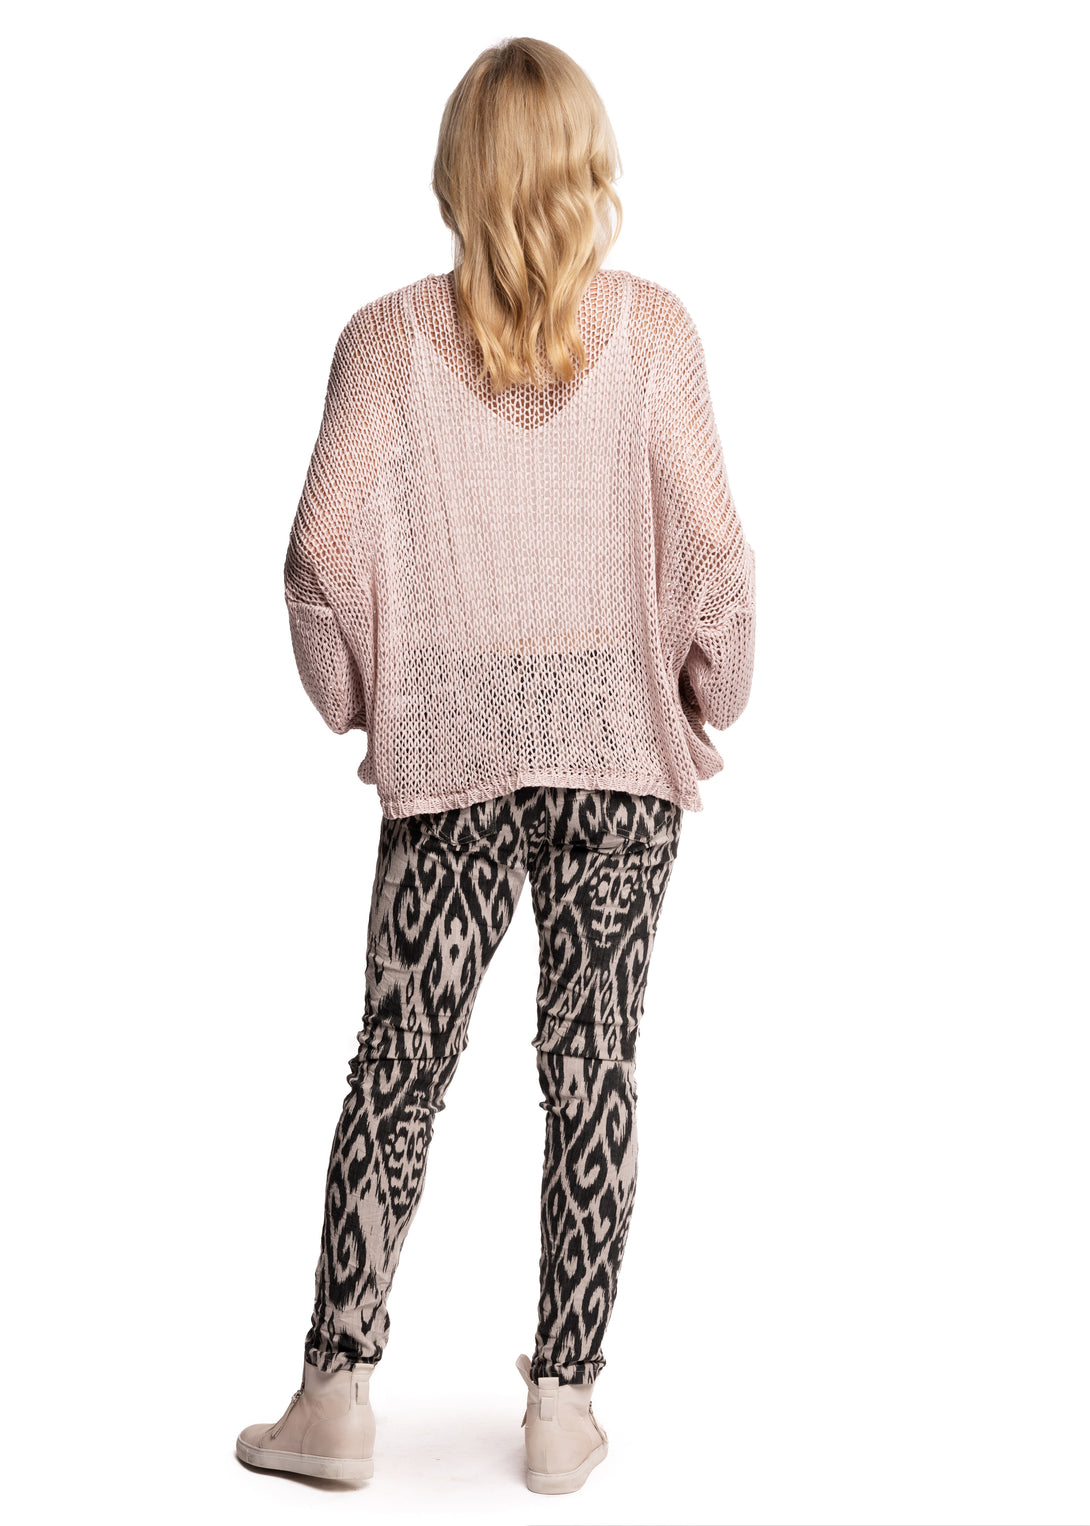 Rossella Knit Top in Blush - Imagine Fashion